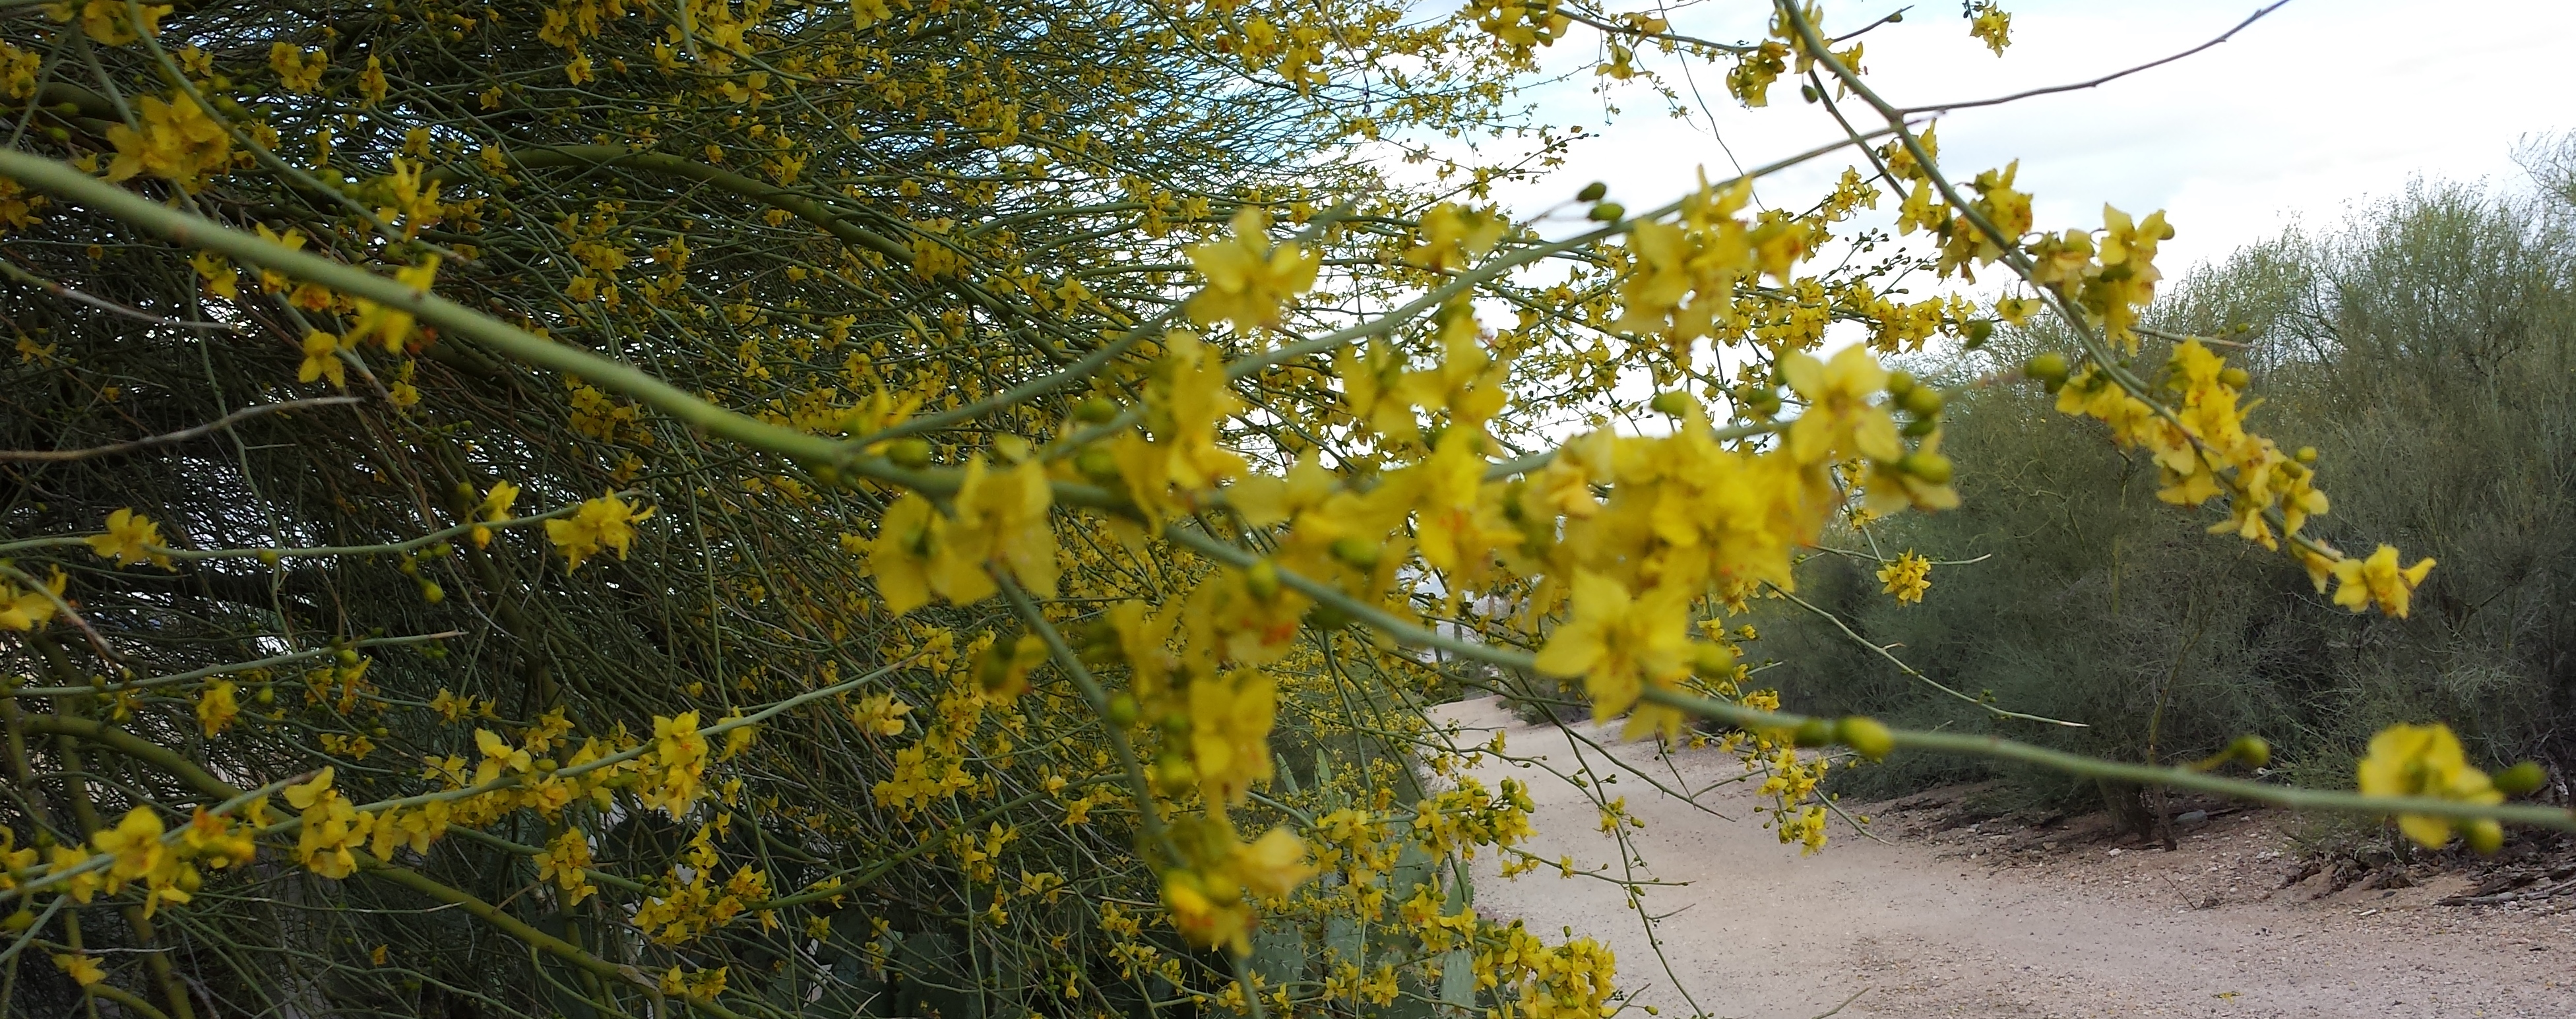 Palo Verde in bloom